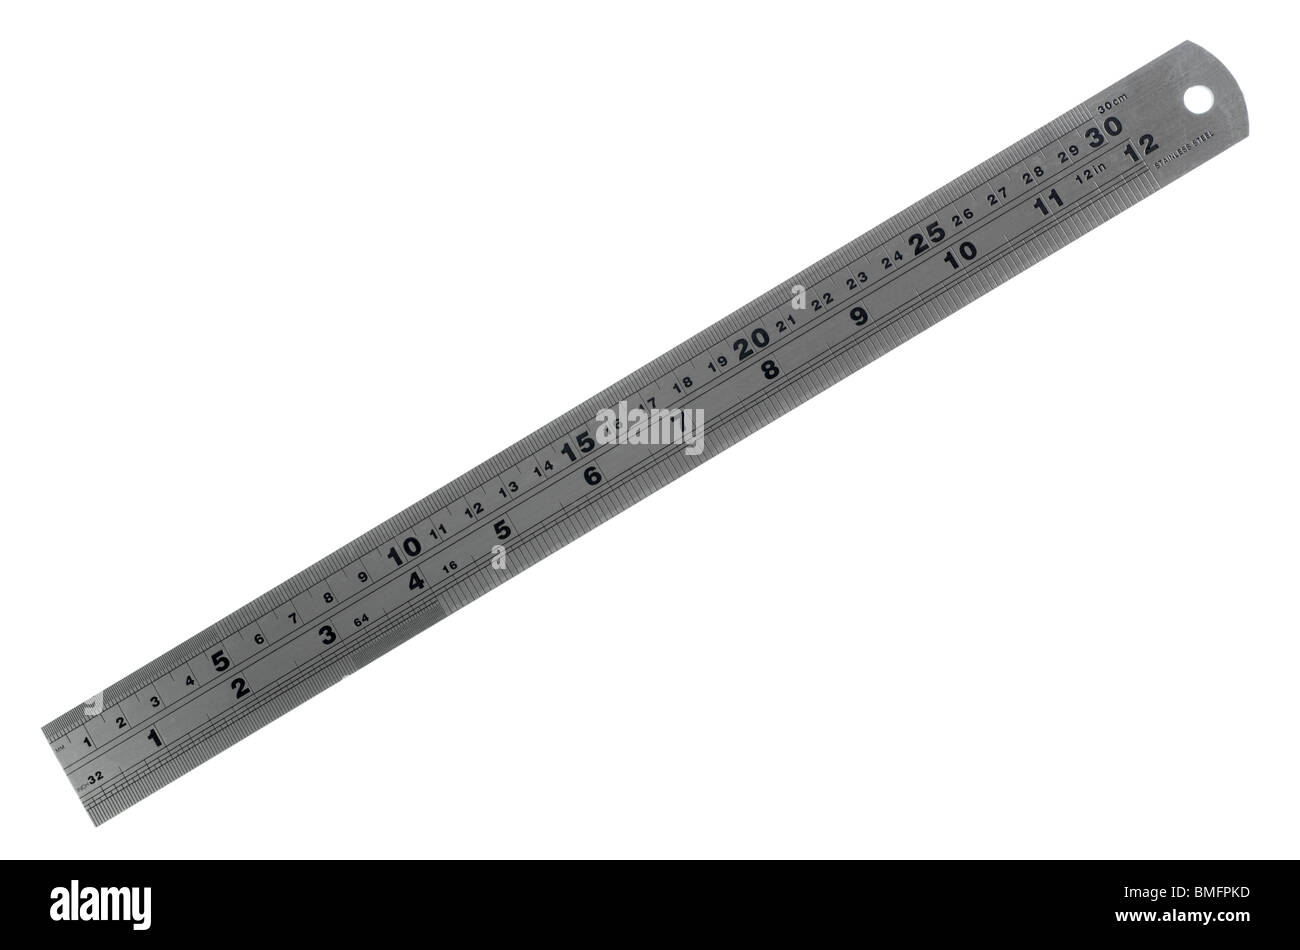 Ruler, metal ruler Stock Photo